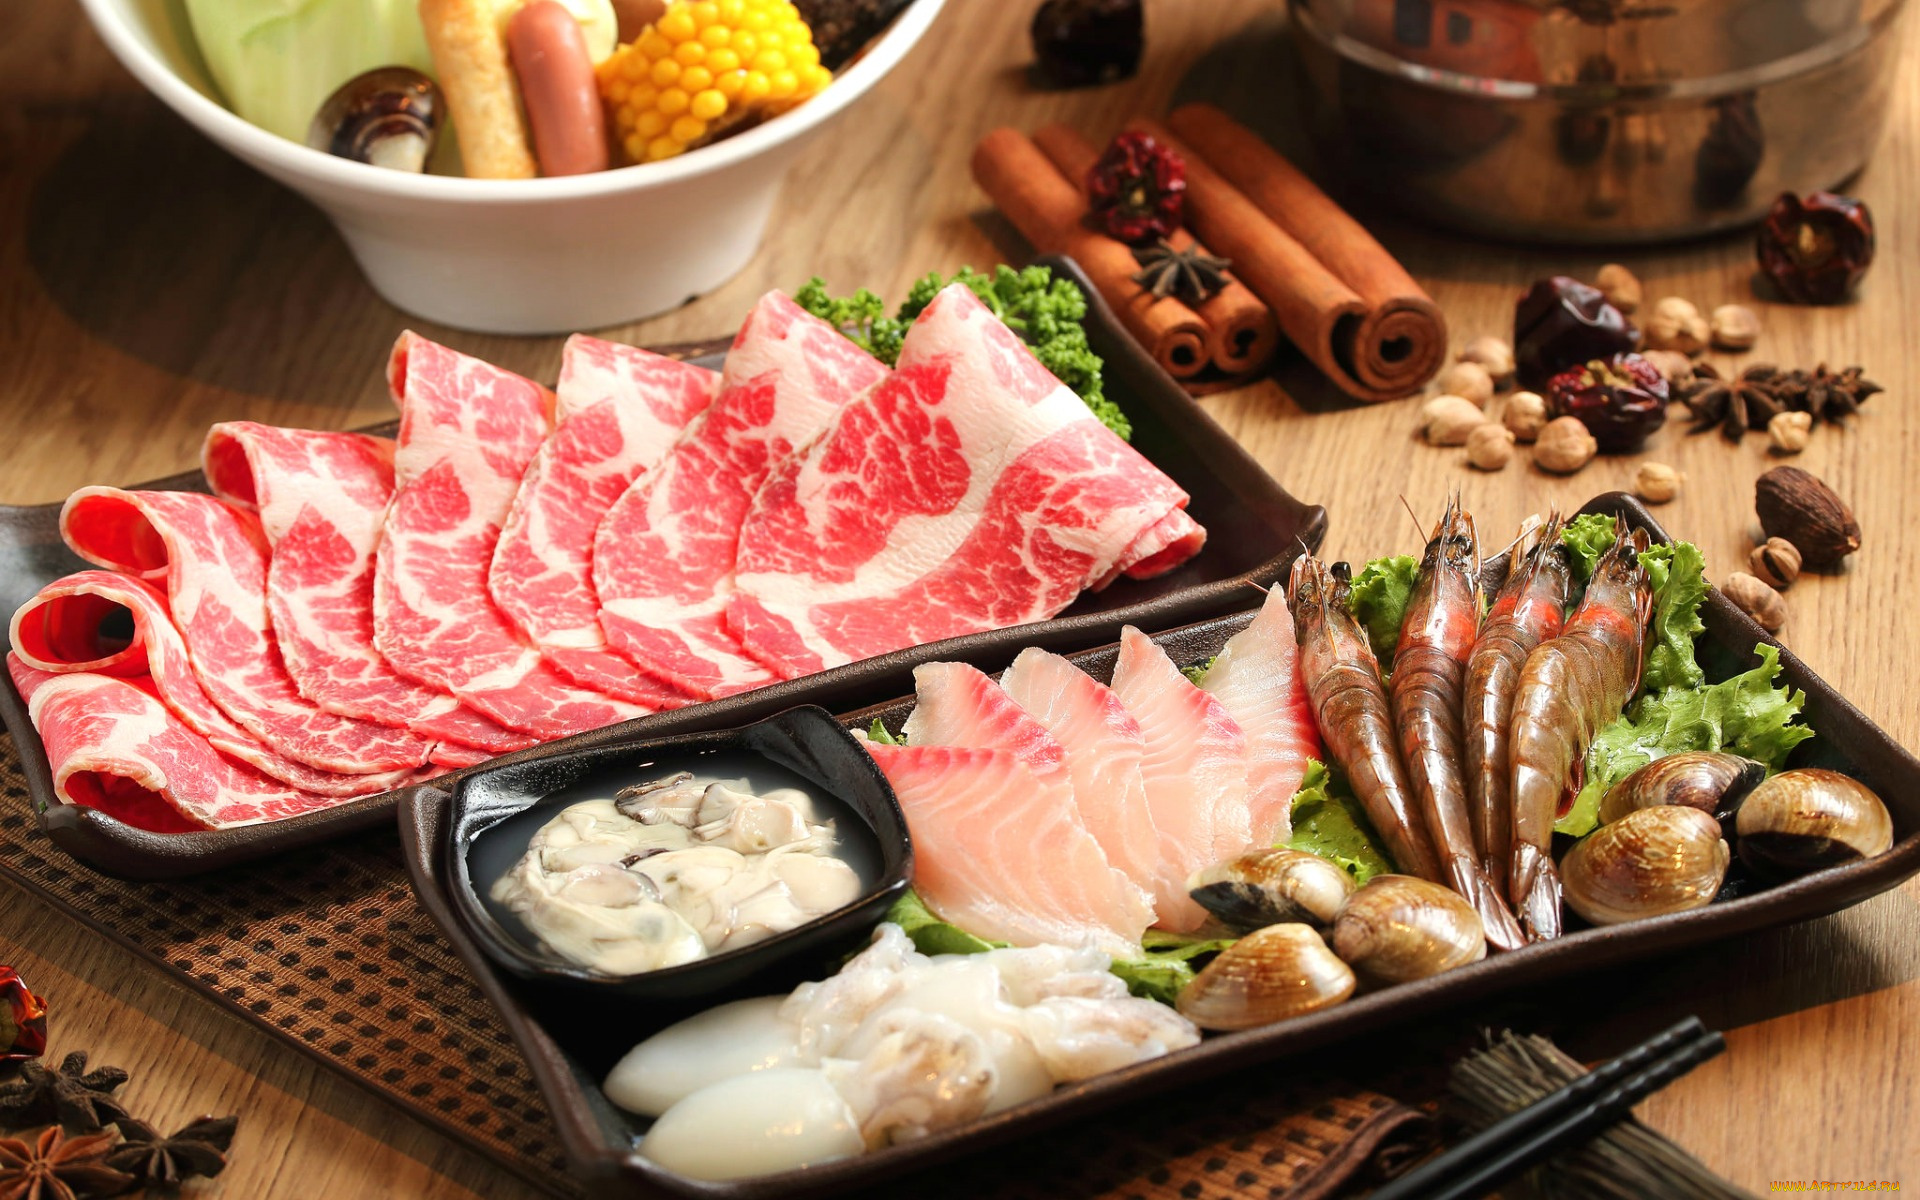 еда, разное, моллюски, мясо, кальмары, бадьян, корица, специи, рыба, креветки, морепродукты, блюда, японская, кухня, ассорти